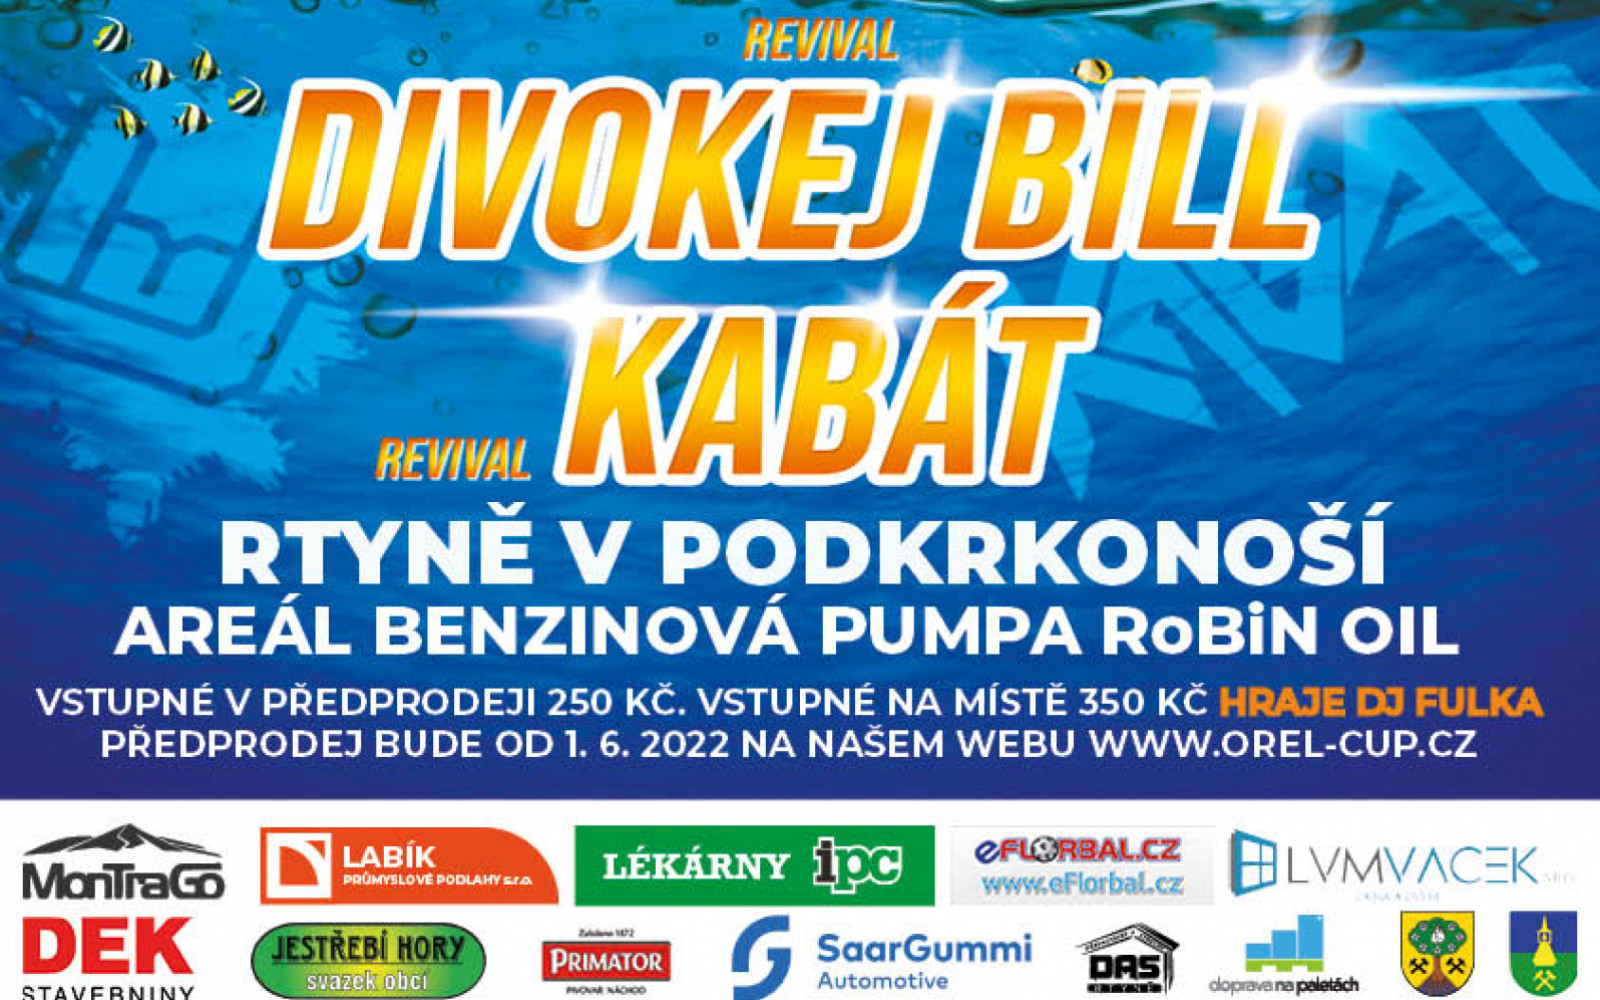 Summer Party - Kabát (revival) a Divokej Bill (revival)